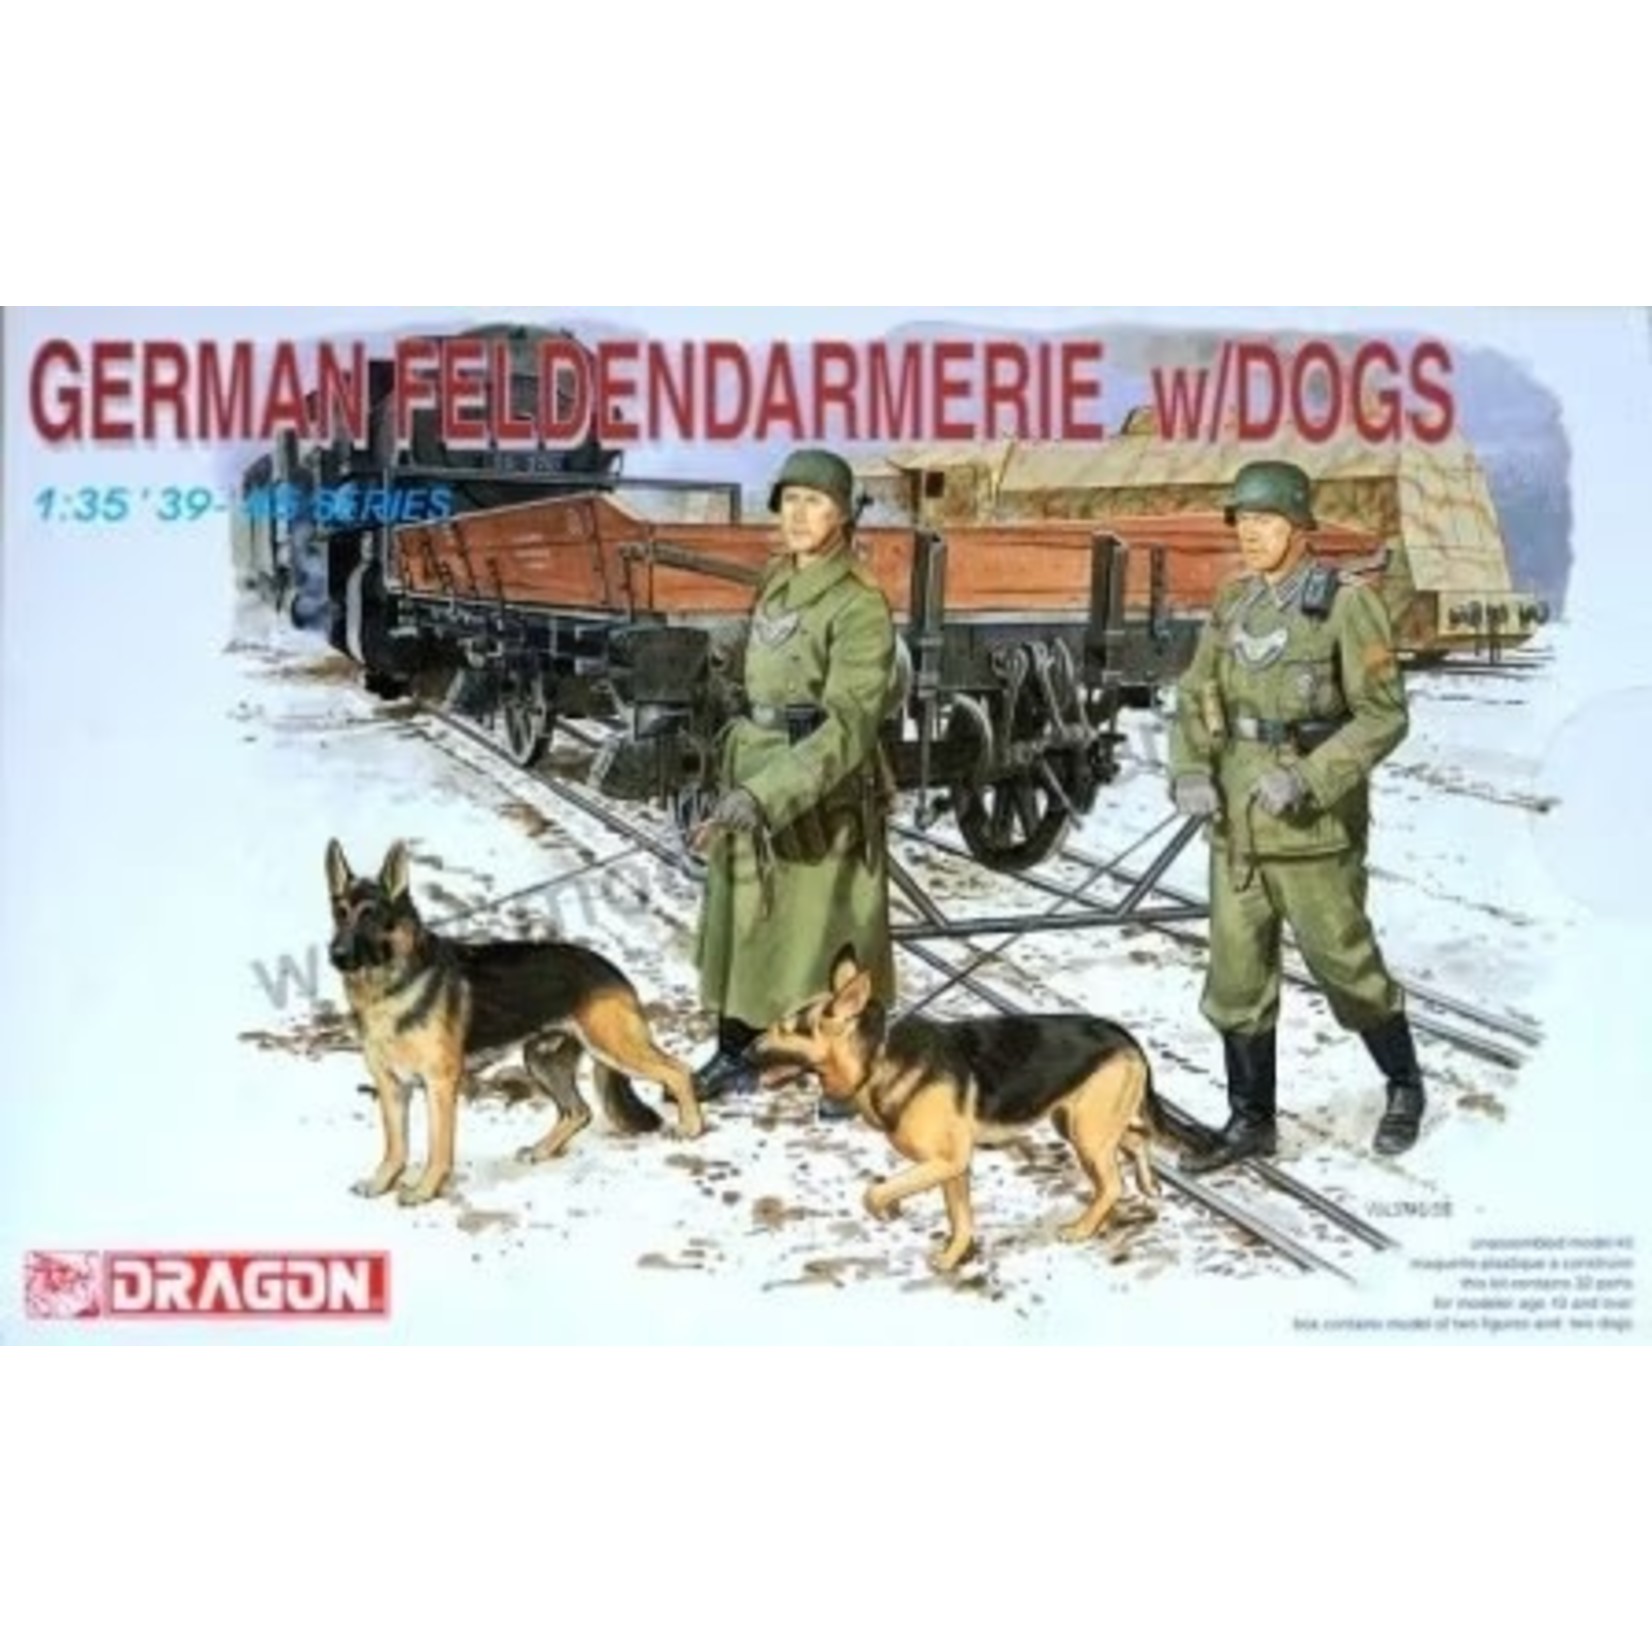 Dragon 1:35 German Feldendarmere w/dogs